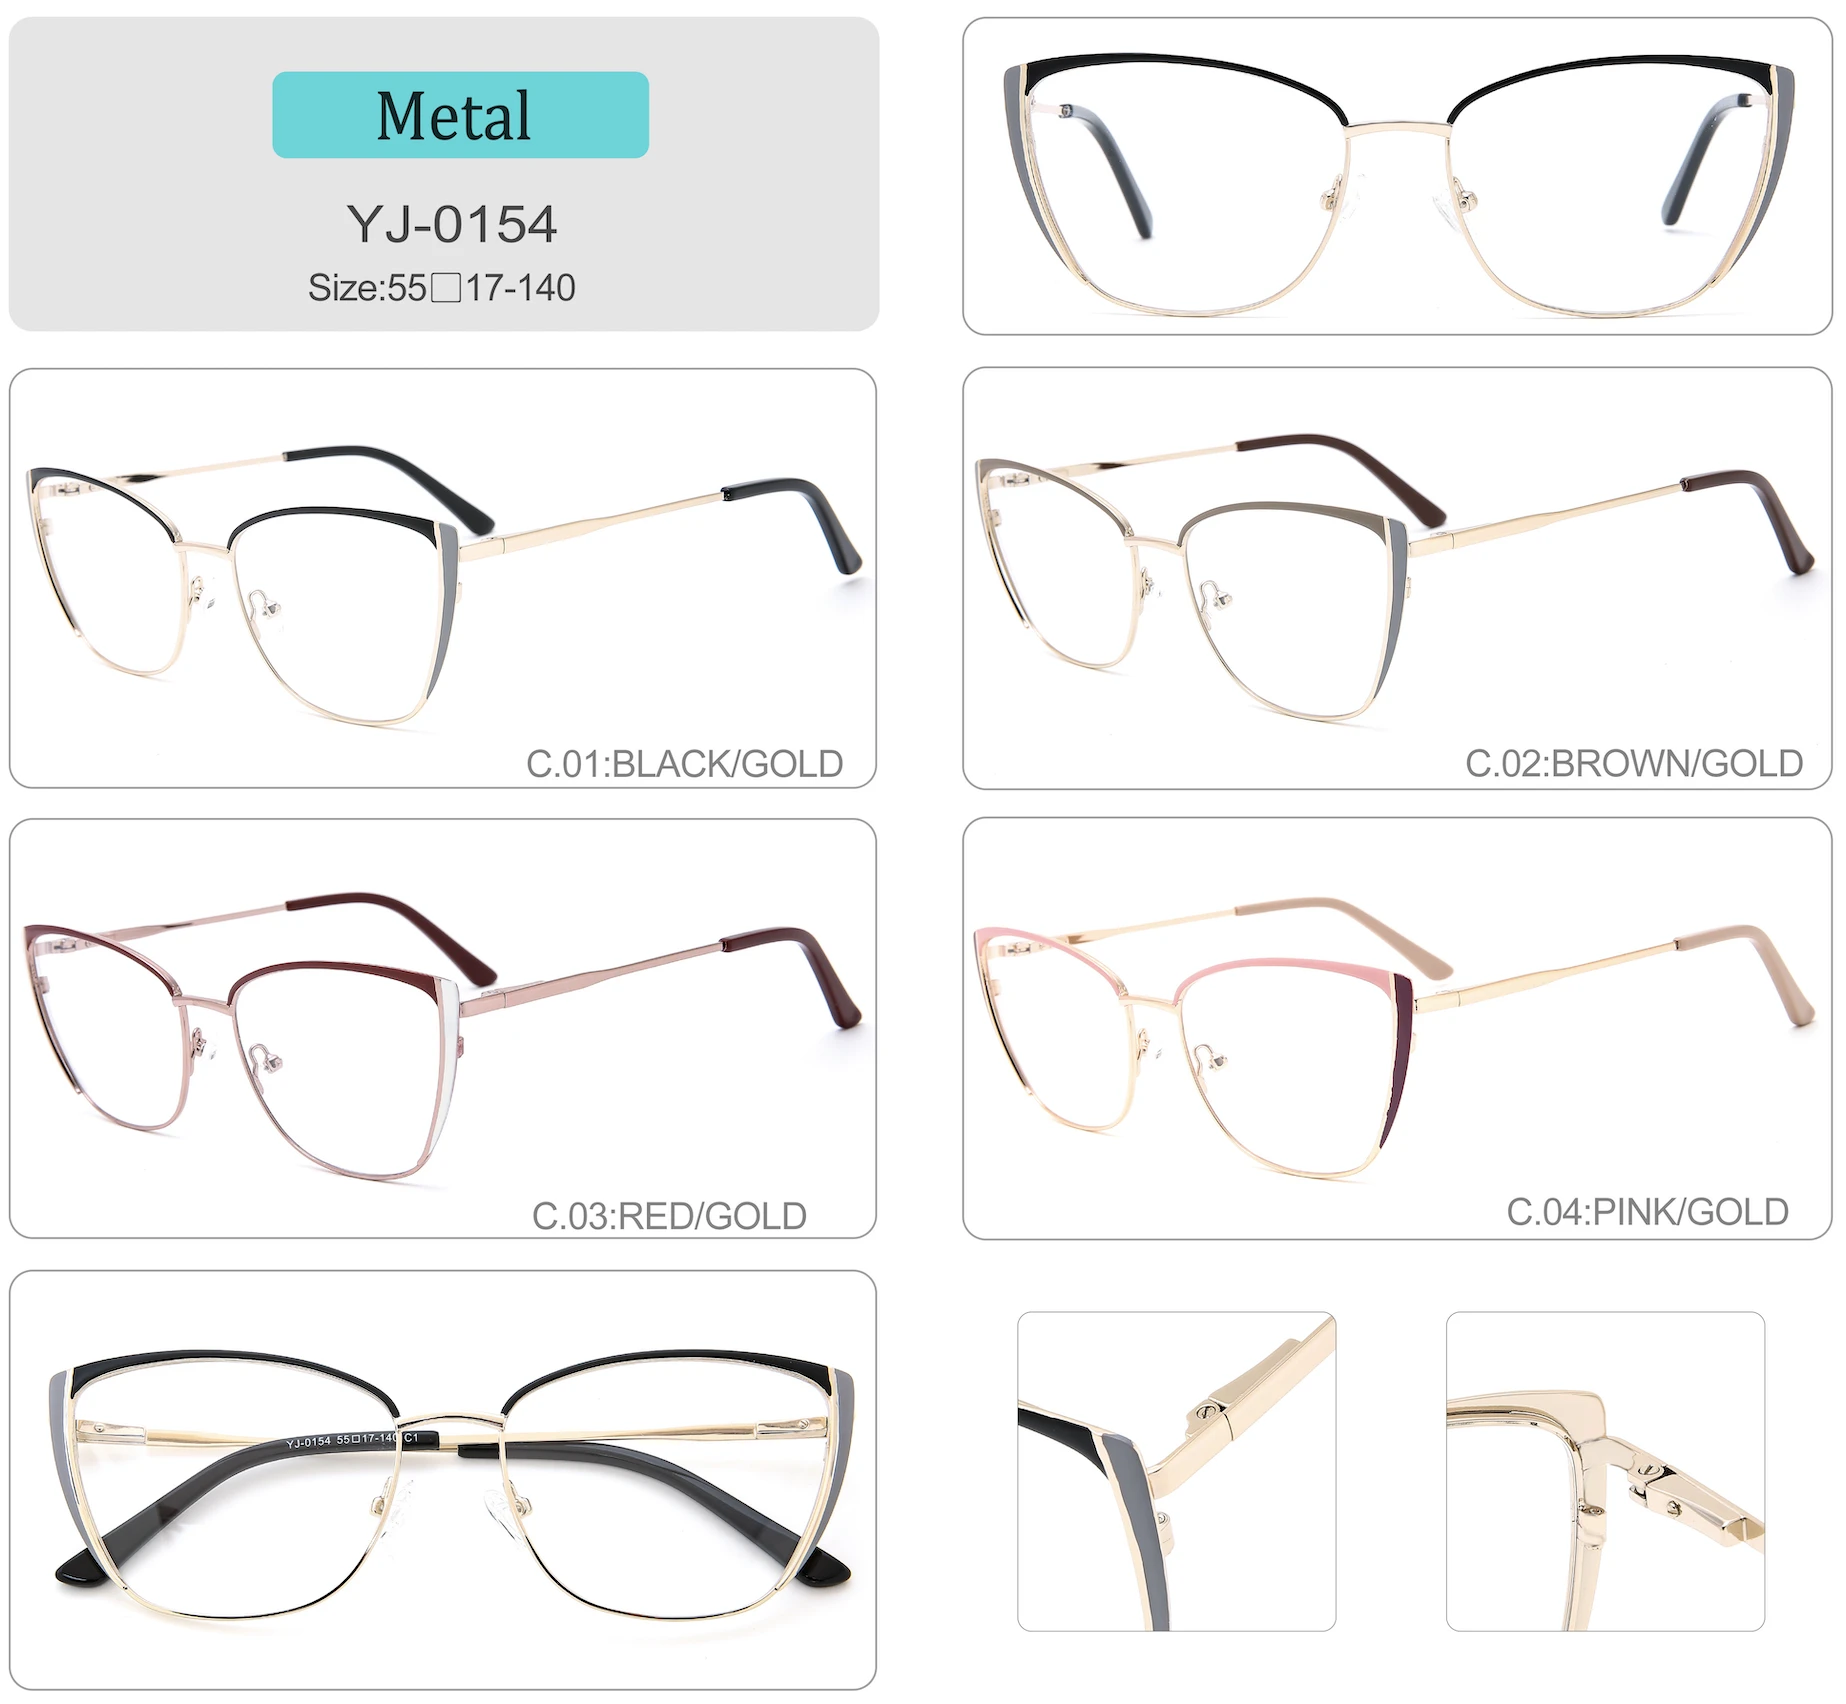 2021 spectacles eyeglasses frames eye glasses frames eyeglasses eyeglasses frames optical variety